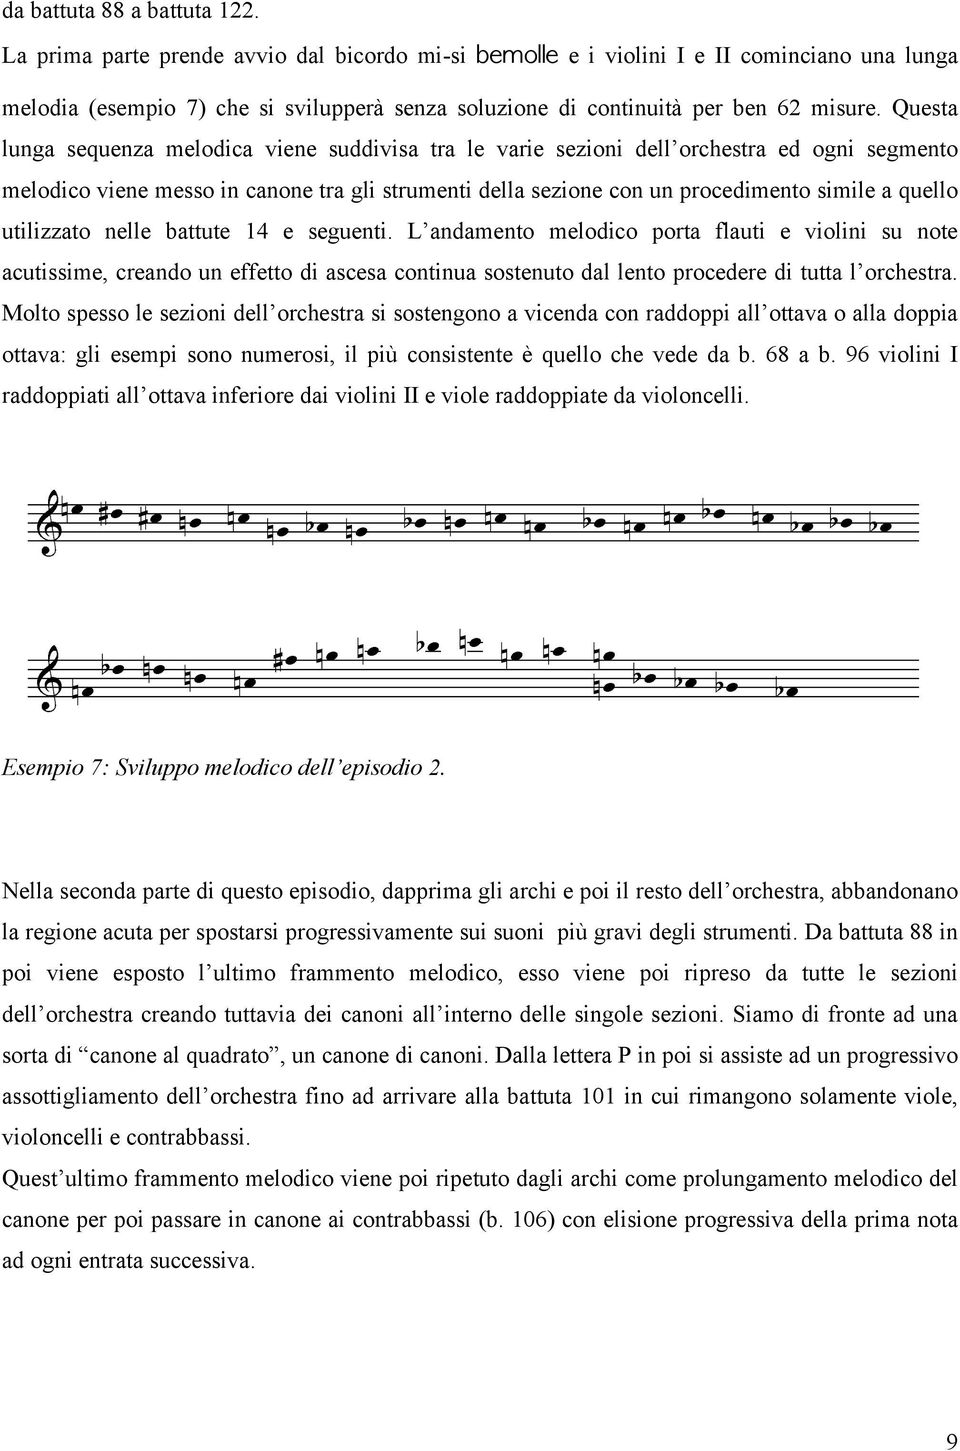 Questa lunga sequenza melodica viene suddivisa tra le varie sezioni dell orchestra ed ogni segmento melodico viene messo in canone tra gli strumenti della sezione con un procedimento simile a quello